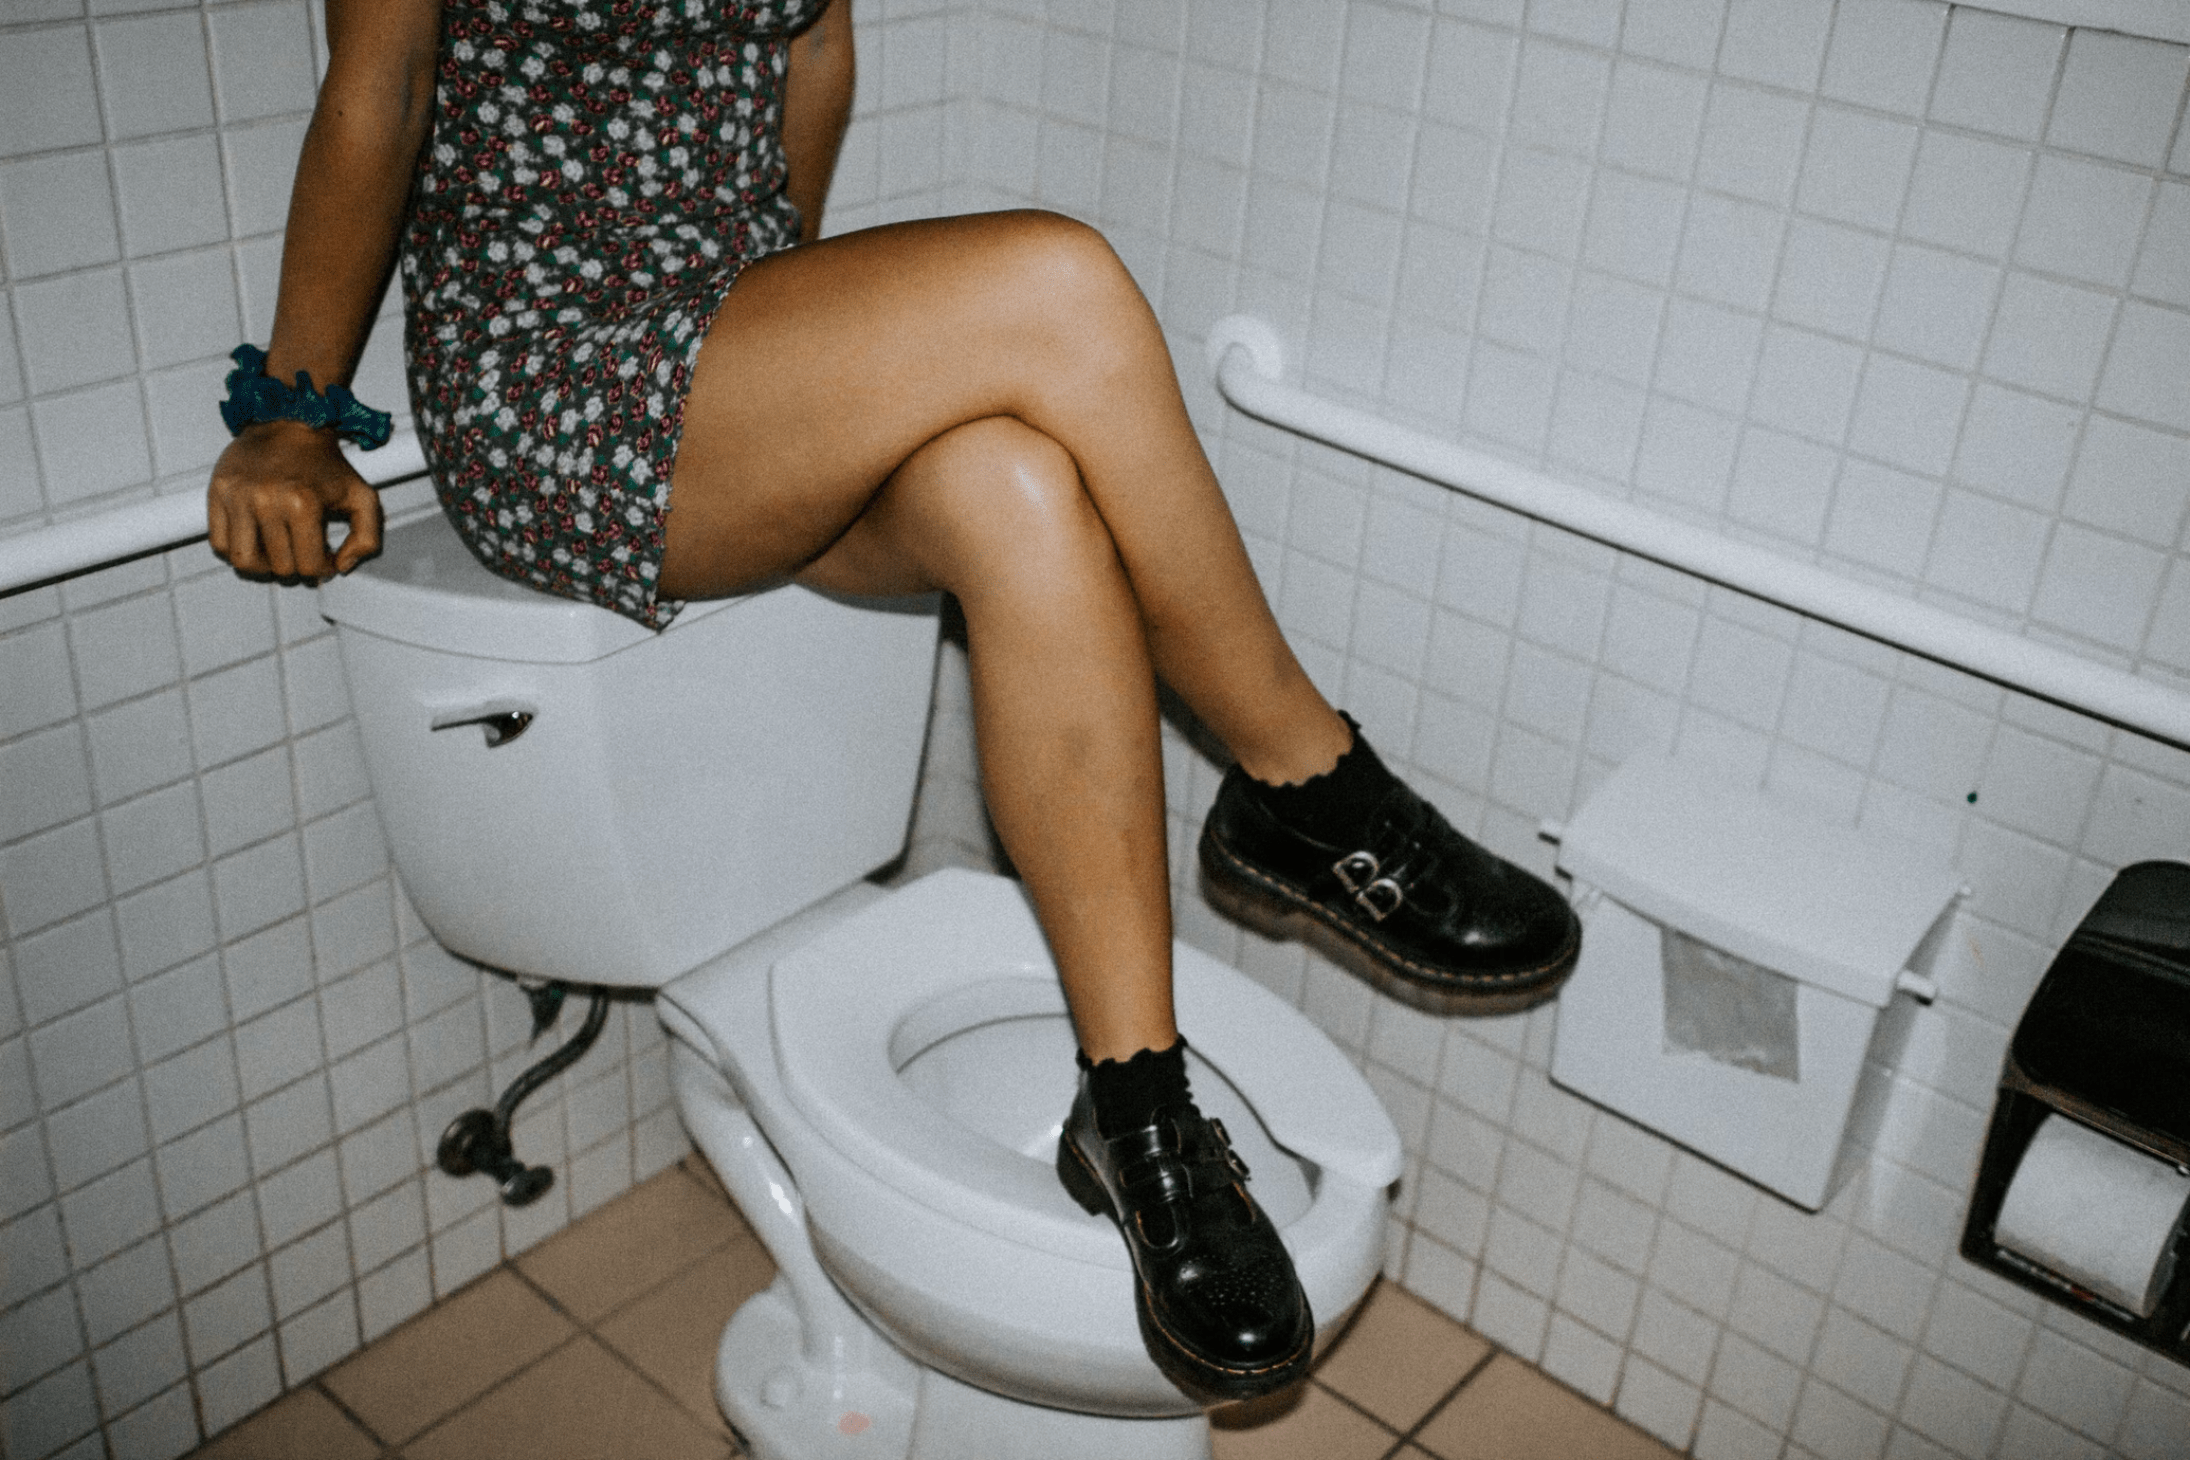 women on toilet tumblr